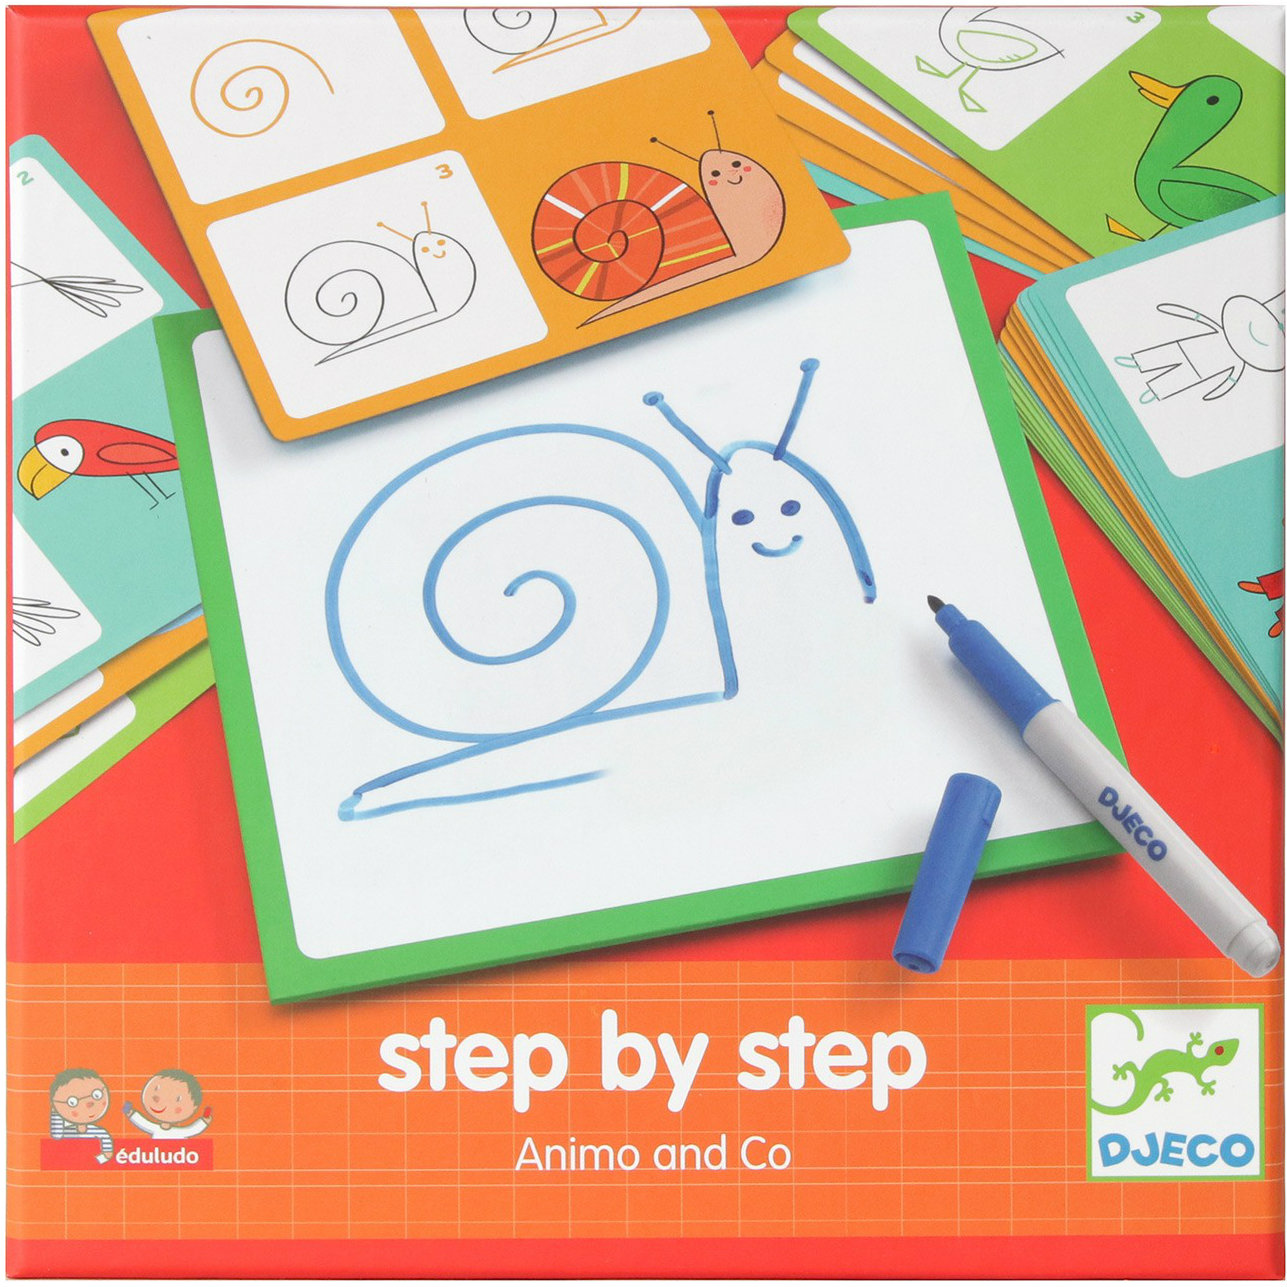 Boîte du jeu Step by Step Animo